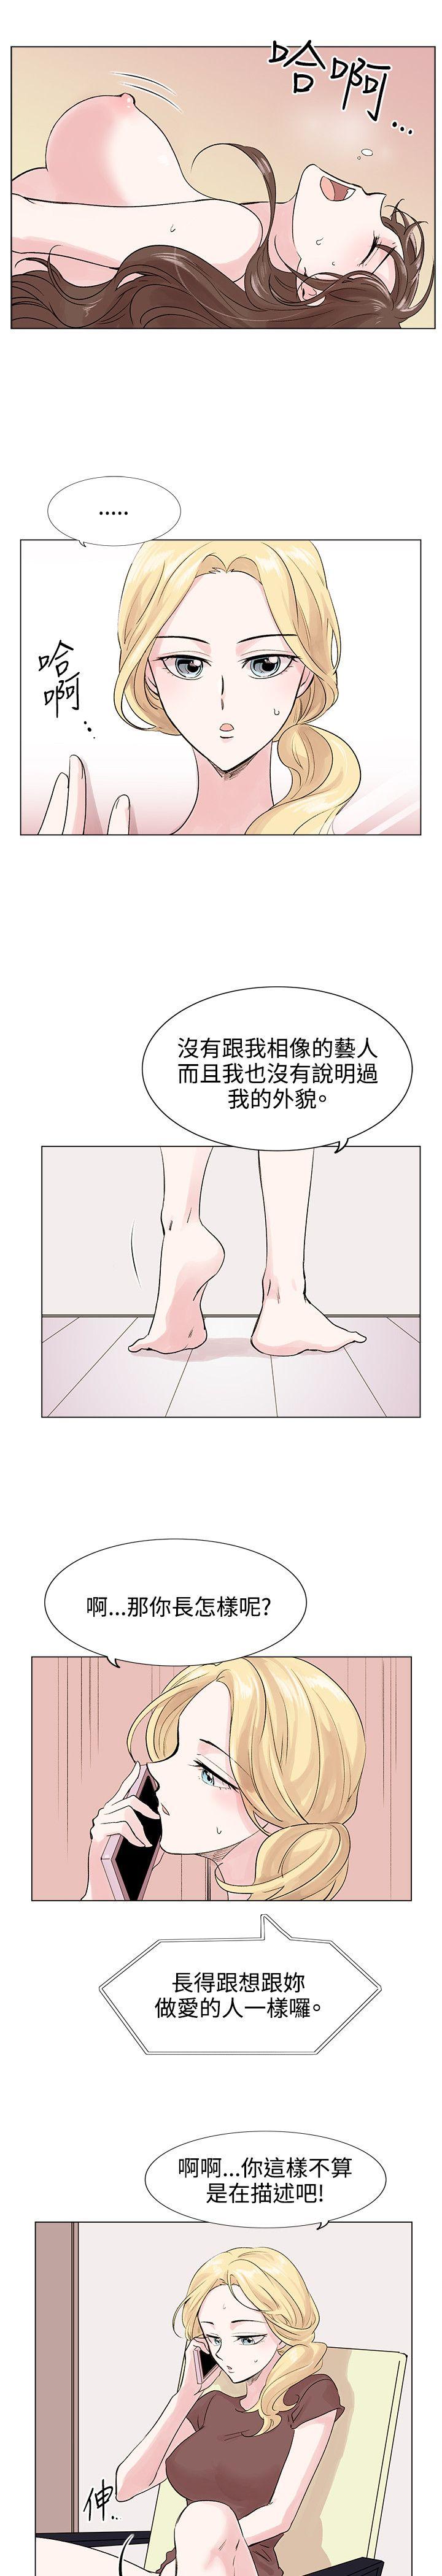 韩国污漫画 合理懷疑 第7话 9